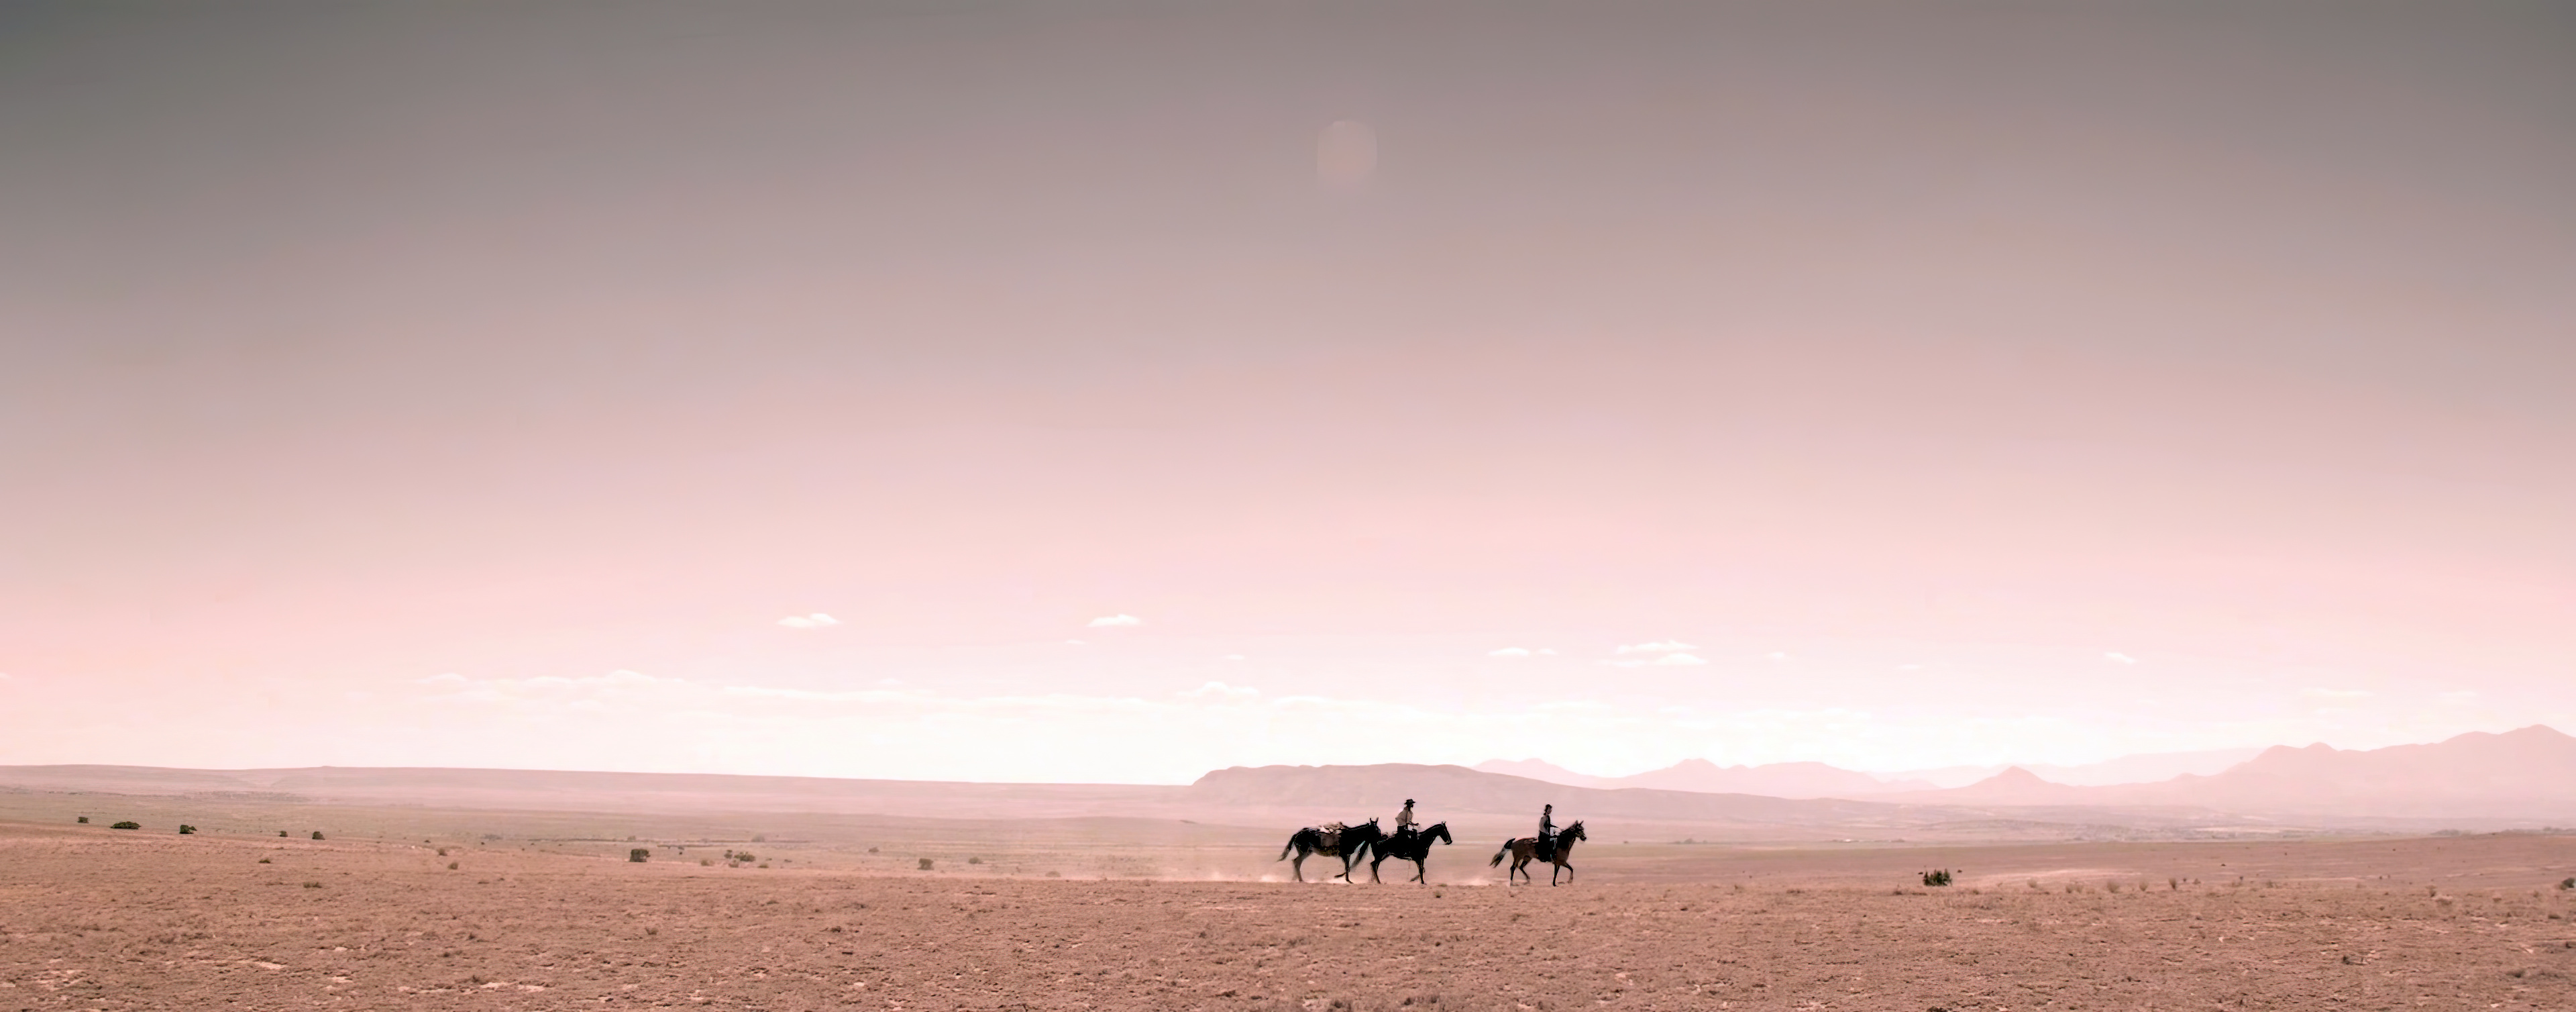 Долгий путь через пустыню на лошадях, Конный тур, Пустынный ландшафт